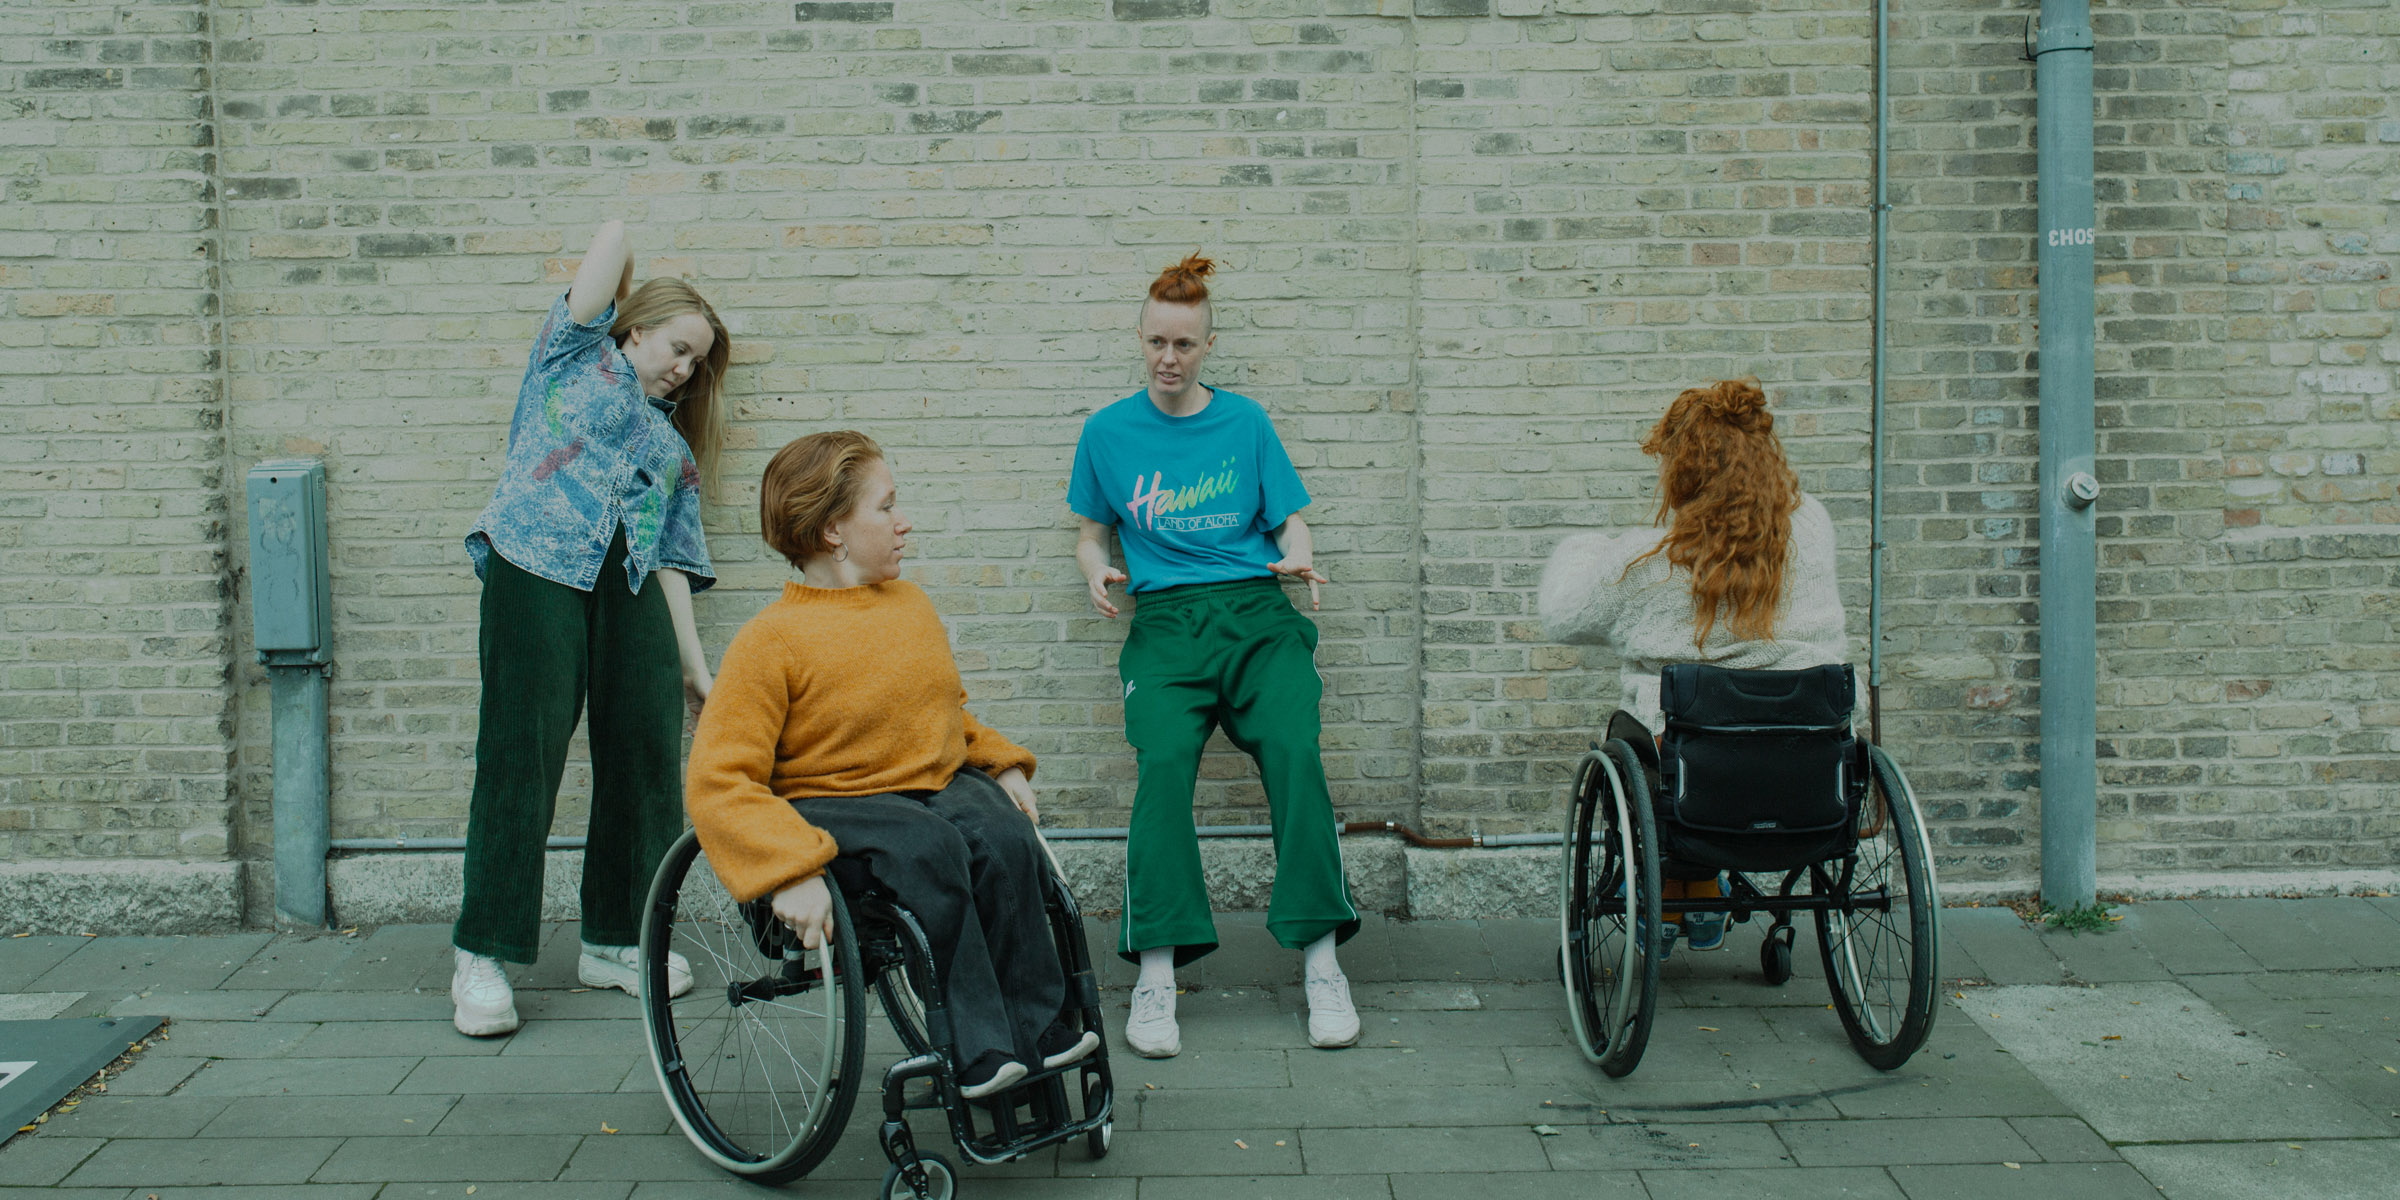 Fyra dansare utomhus vid en tegelvägg. 2 dansare lutar sig mot väggen. En sitter i rullstol med ryggen mot kameran. En sitter i rullstol en bit ifrån väggen, med blicken vänd på en annan av dansarna. Foto Malin Johansson